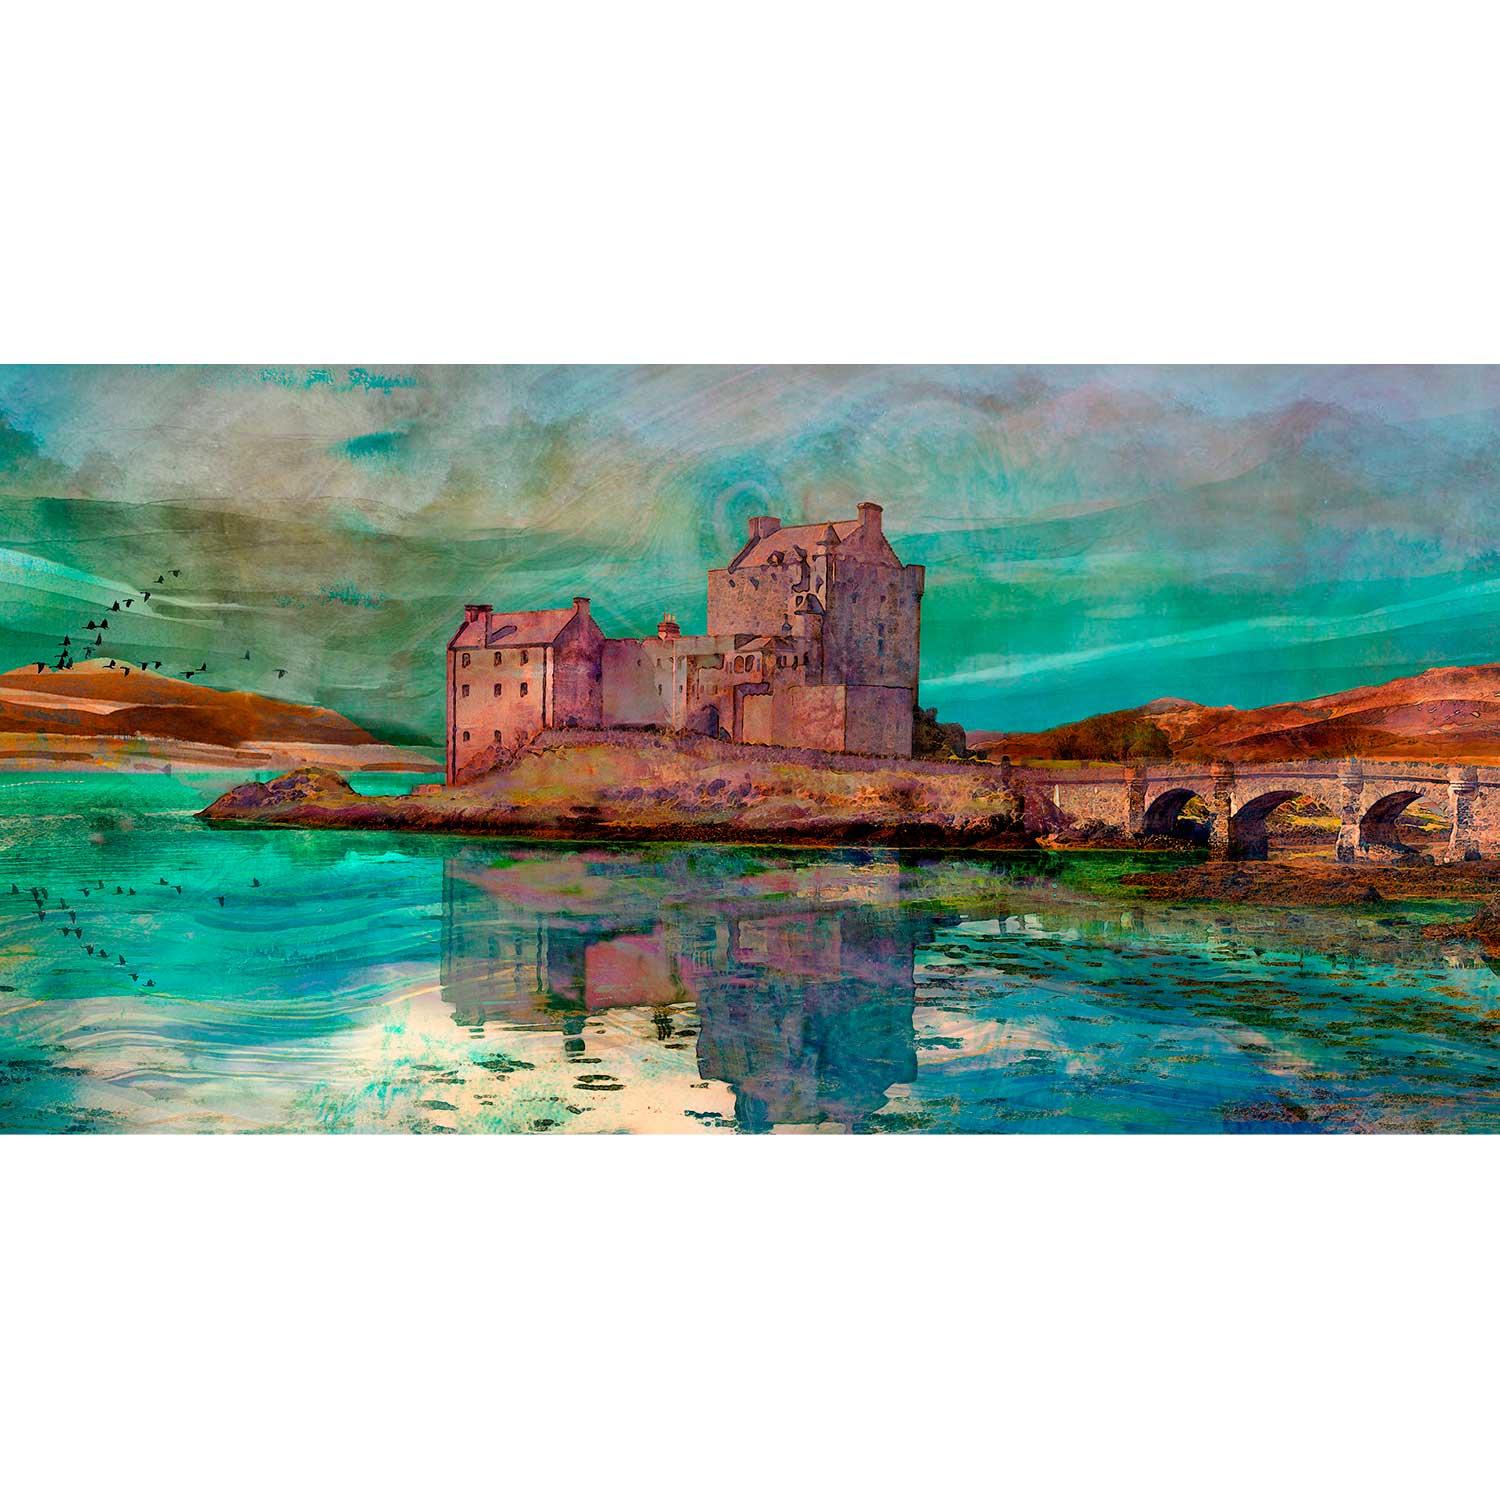 Eilean Donan Castle by artist Lee Scammacca